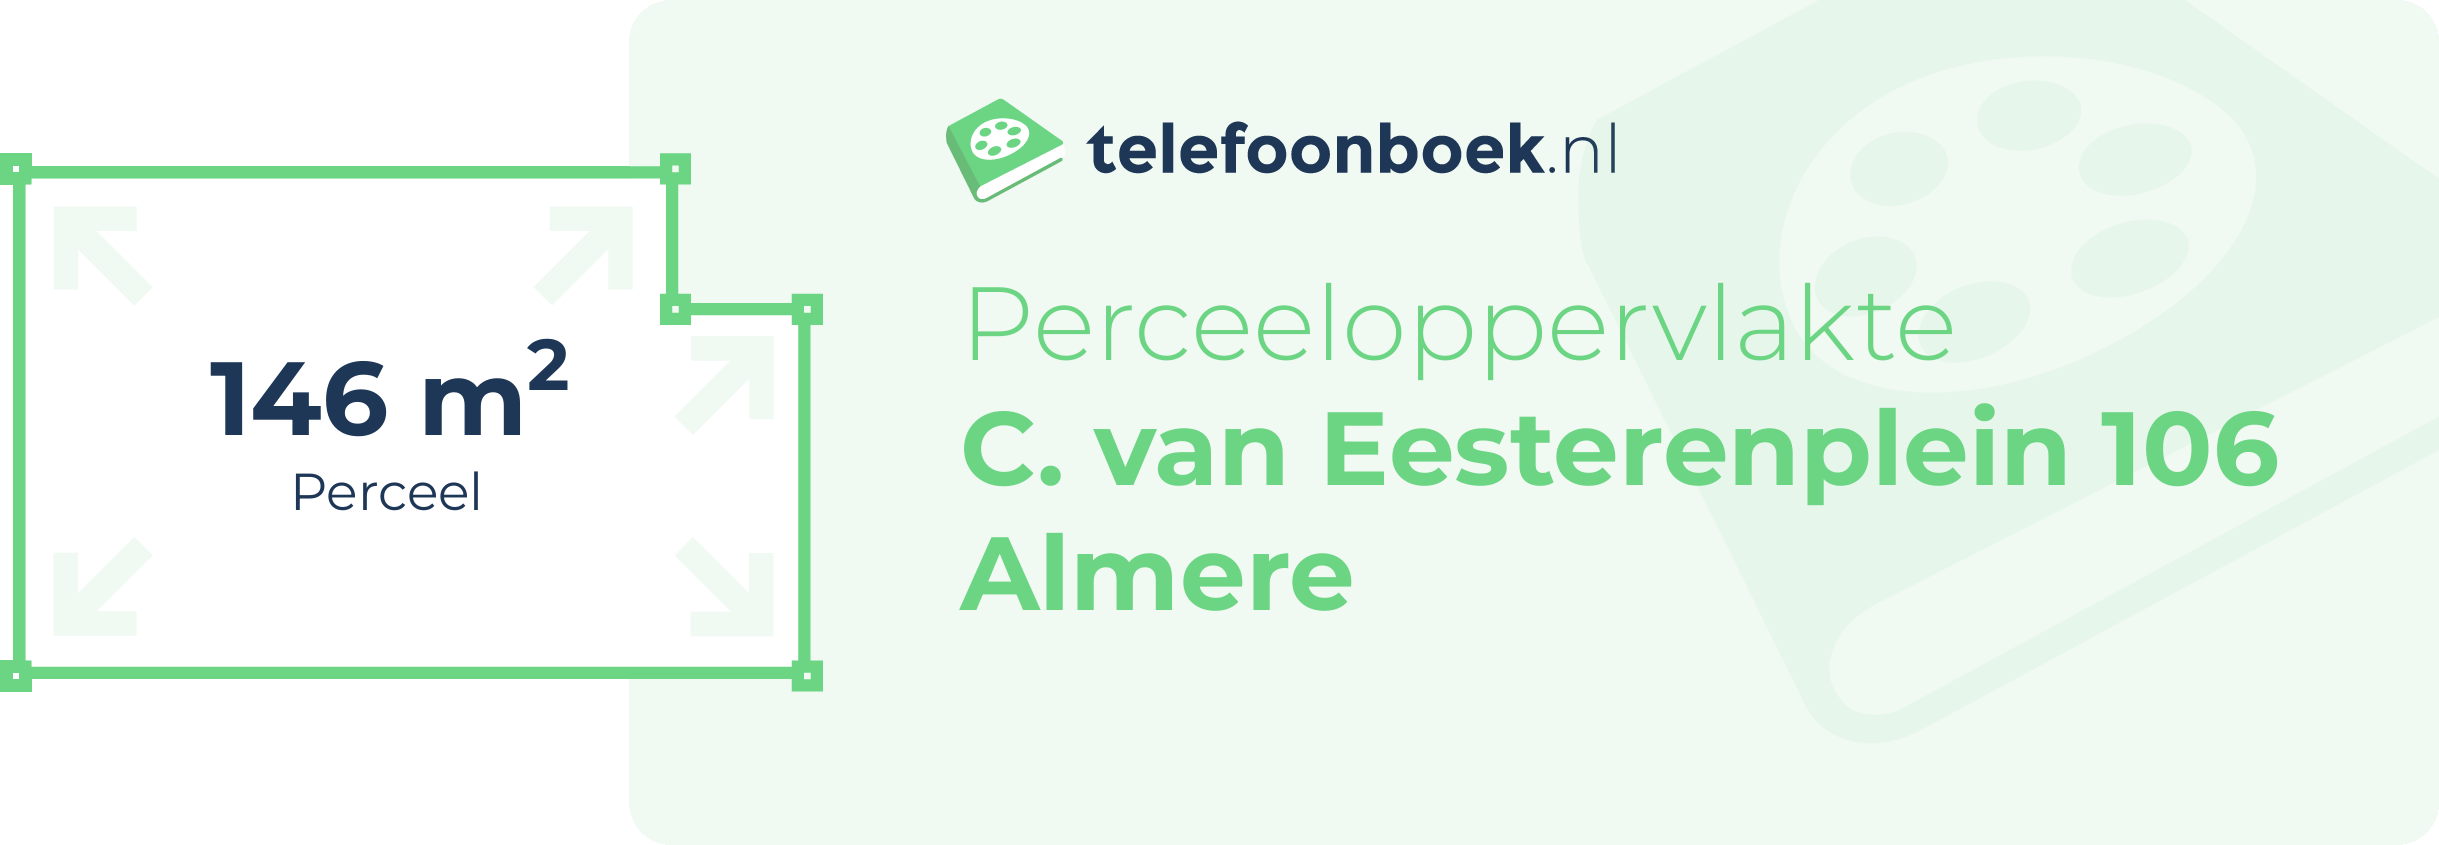 Perceeloppervlakte C. Van Eesterenplein 106 Almere